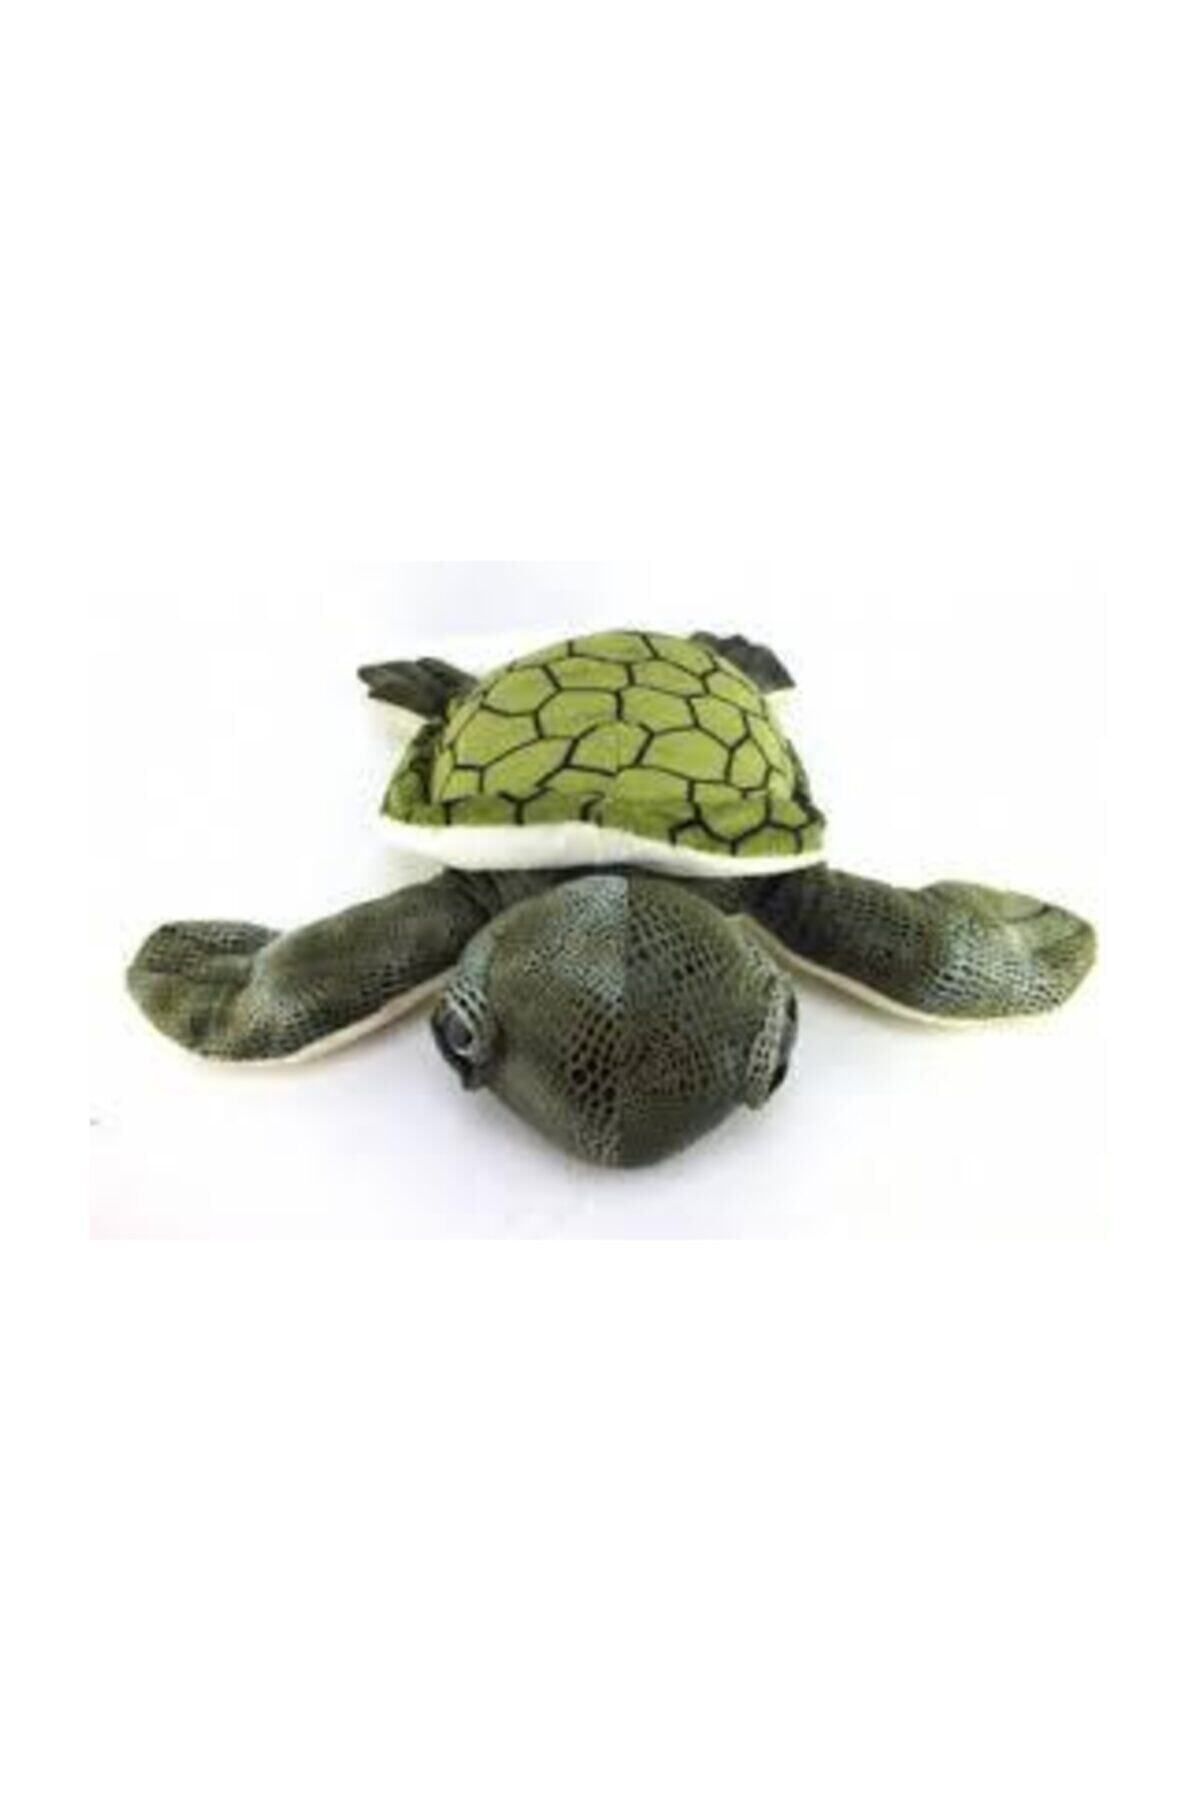 Toystop Peluş Küçük Kaplumbağa